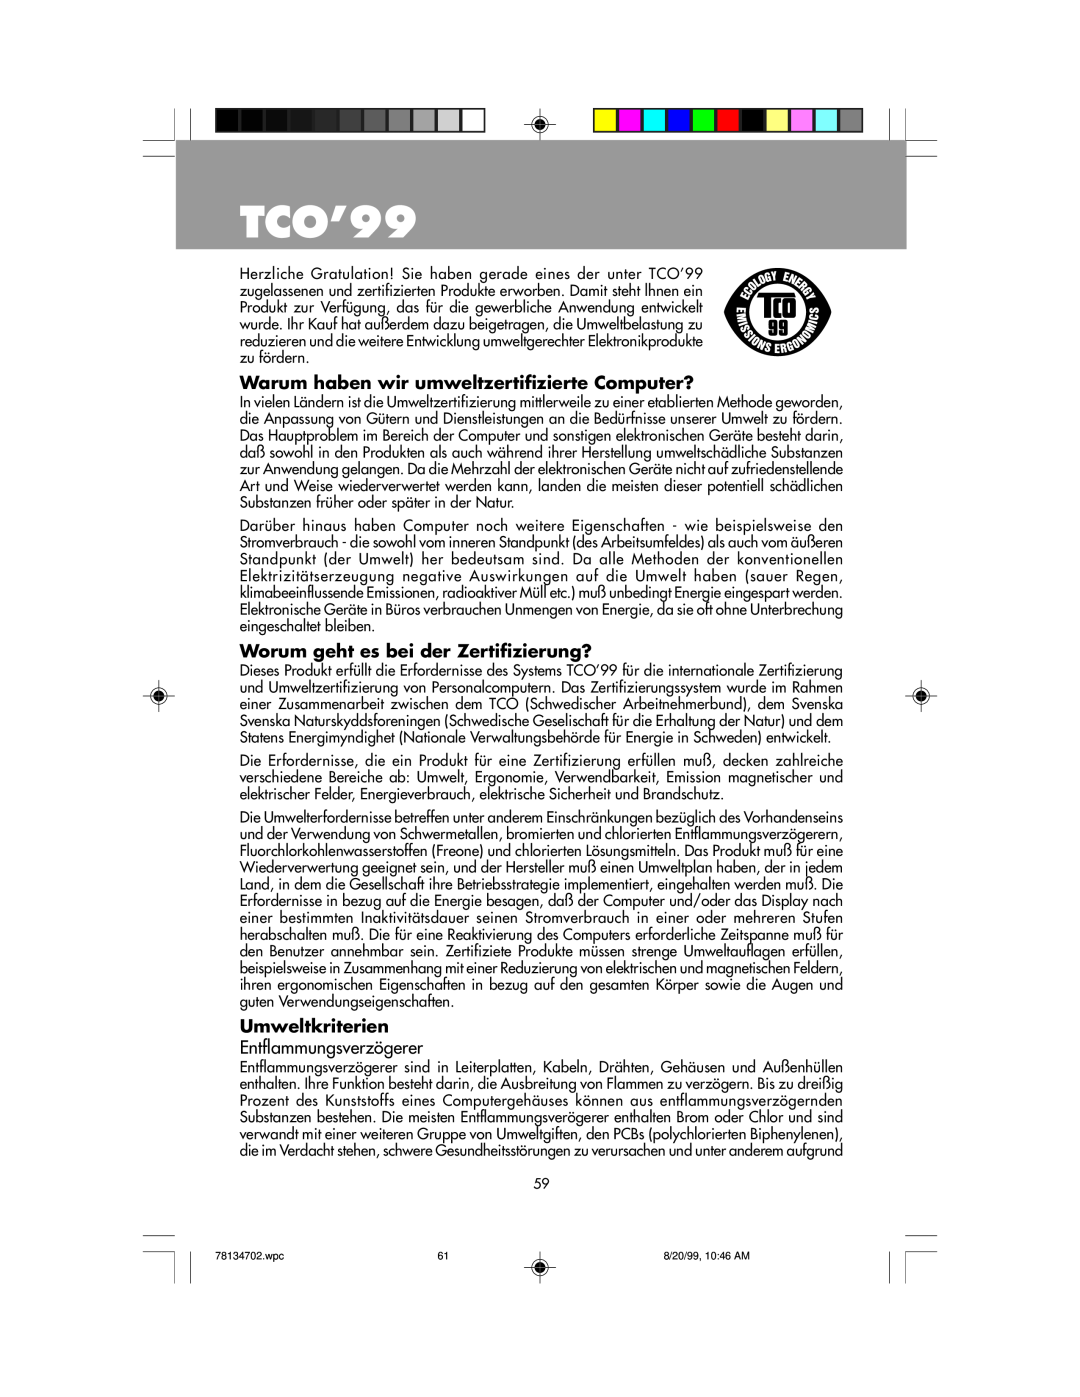 NEC LCD1510+ TCO’99, Warum haben wir umweltzertifizierte Computer?, Worum geht es bei der Zertifizierung?, Umweltkriterien 